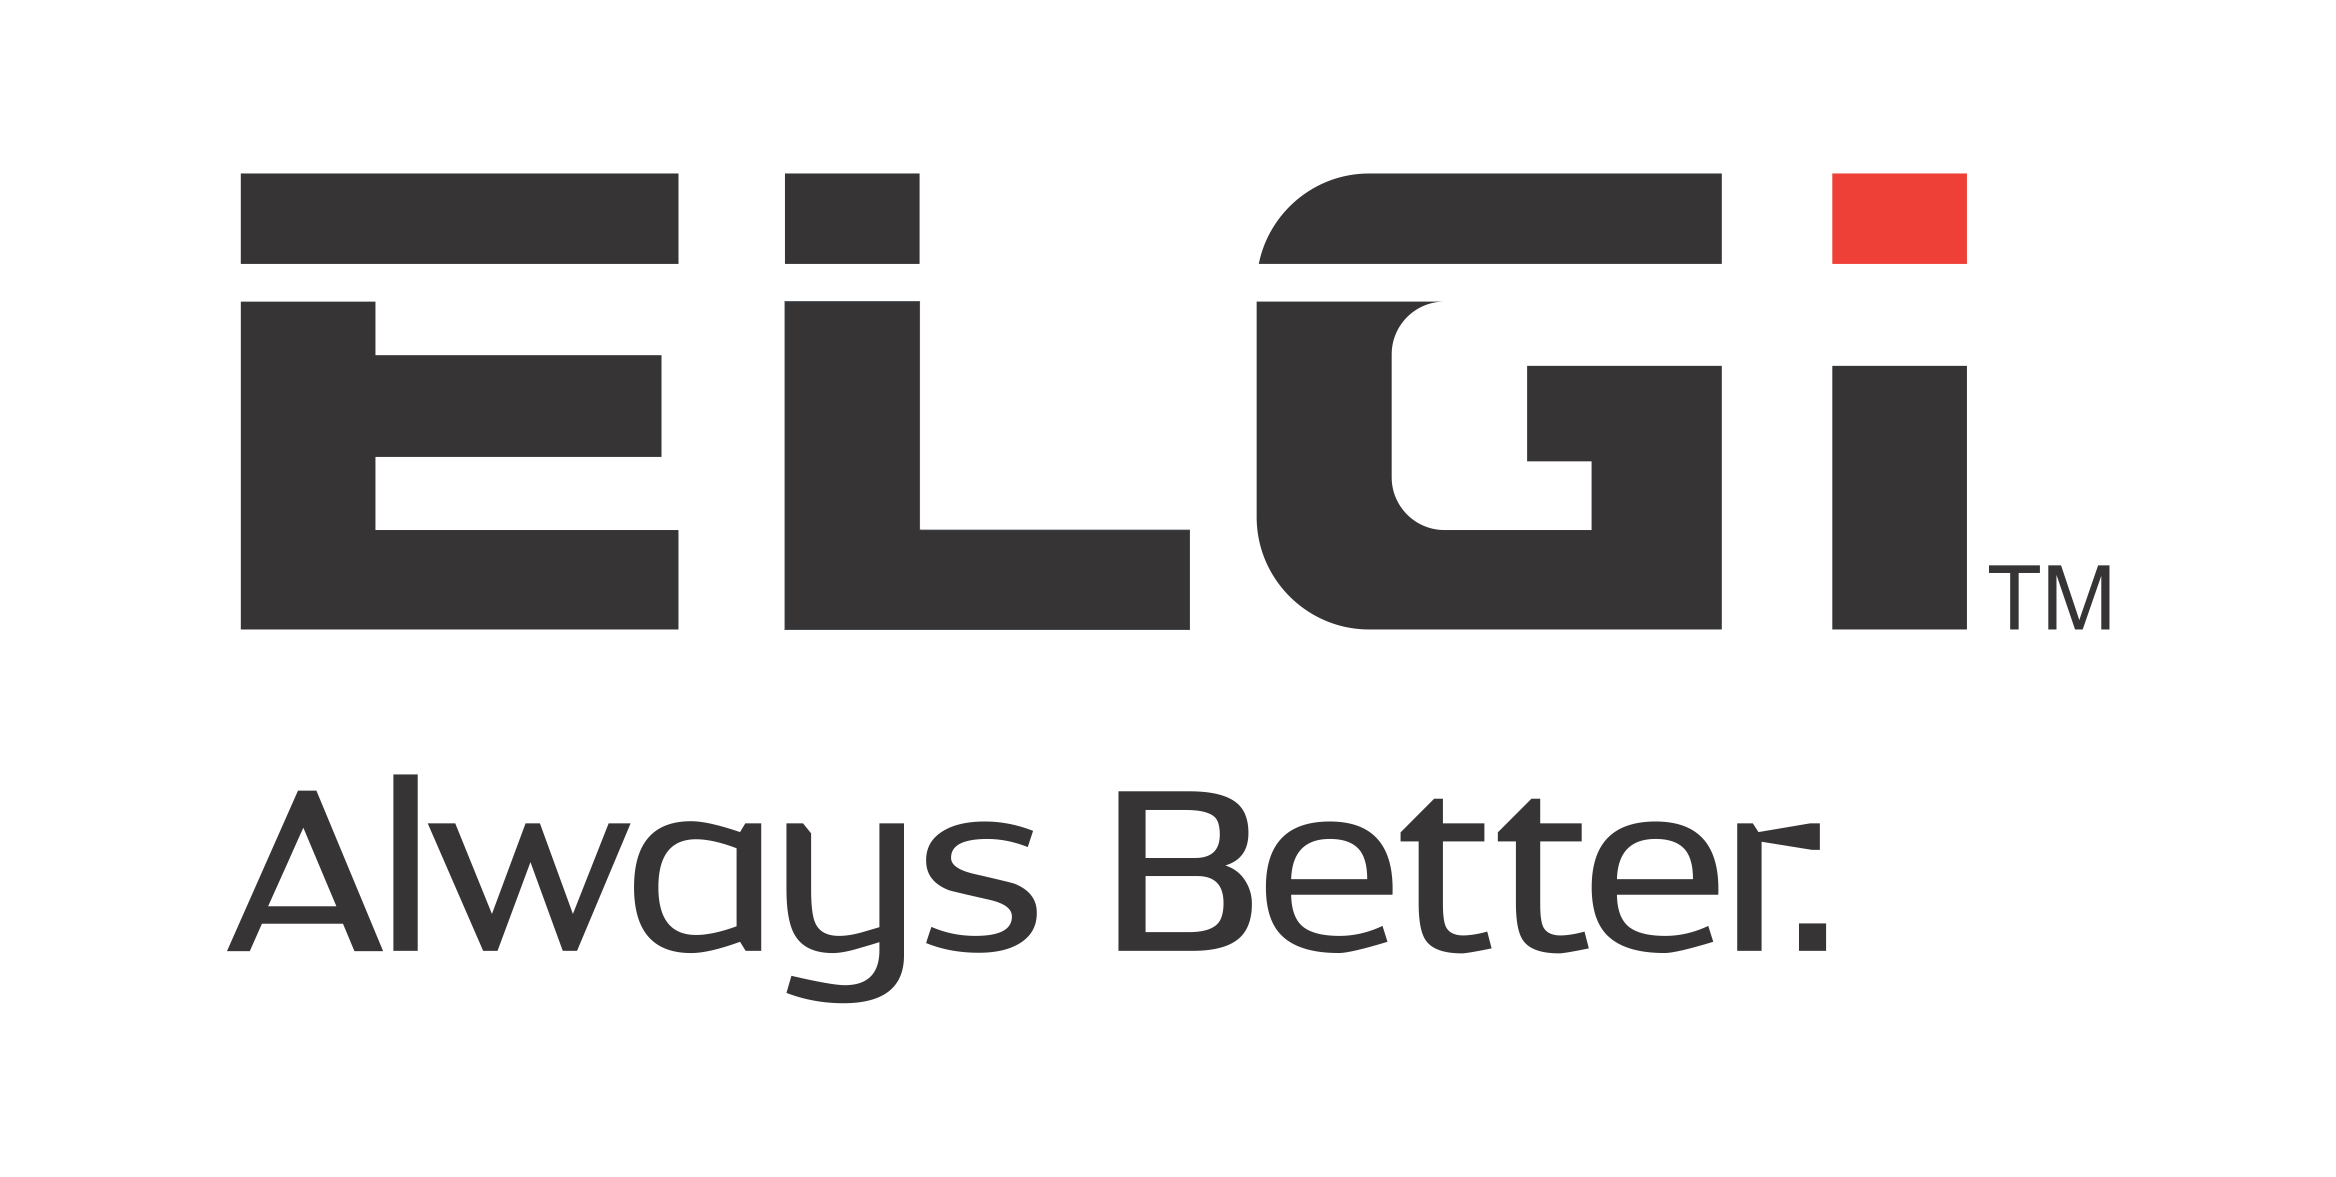 ELGi Logo.png